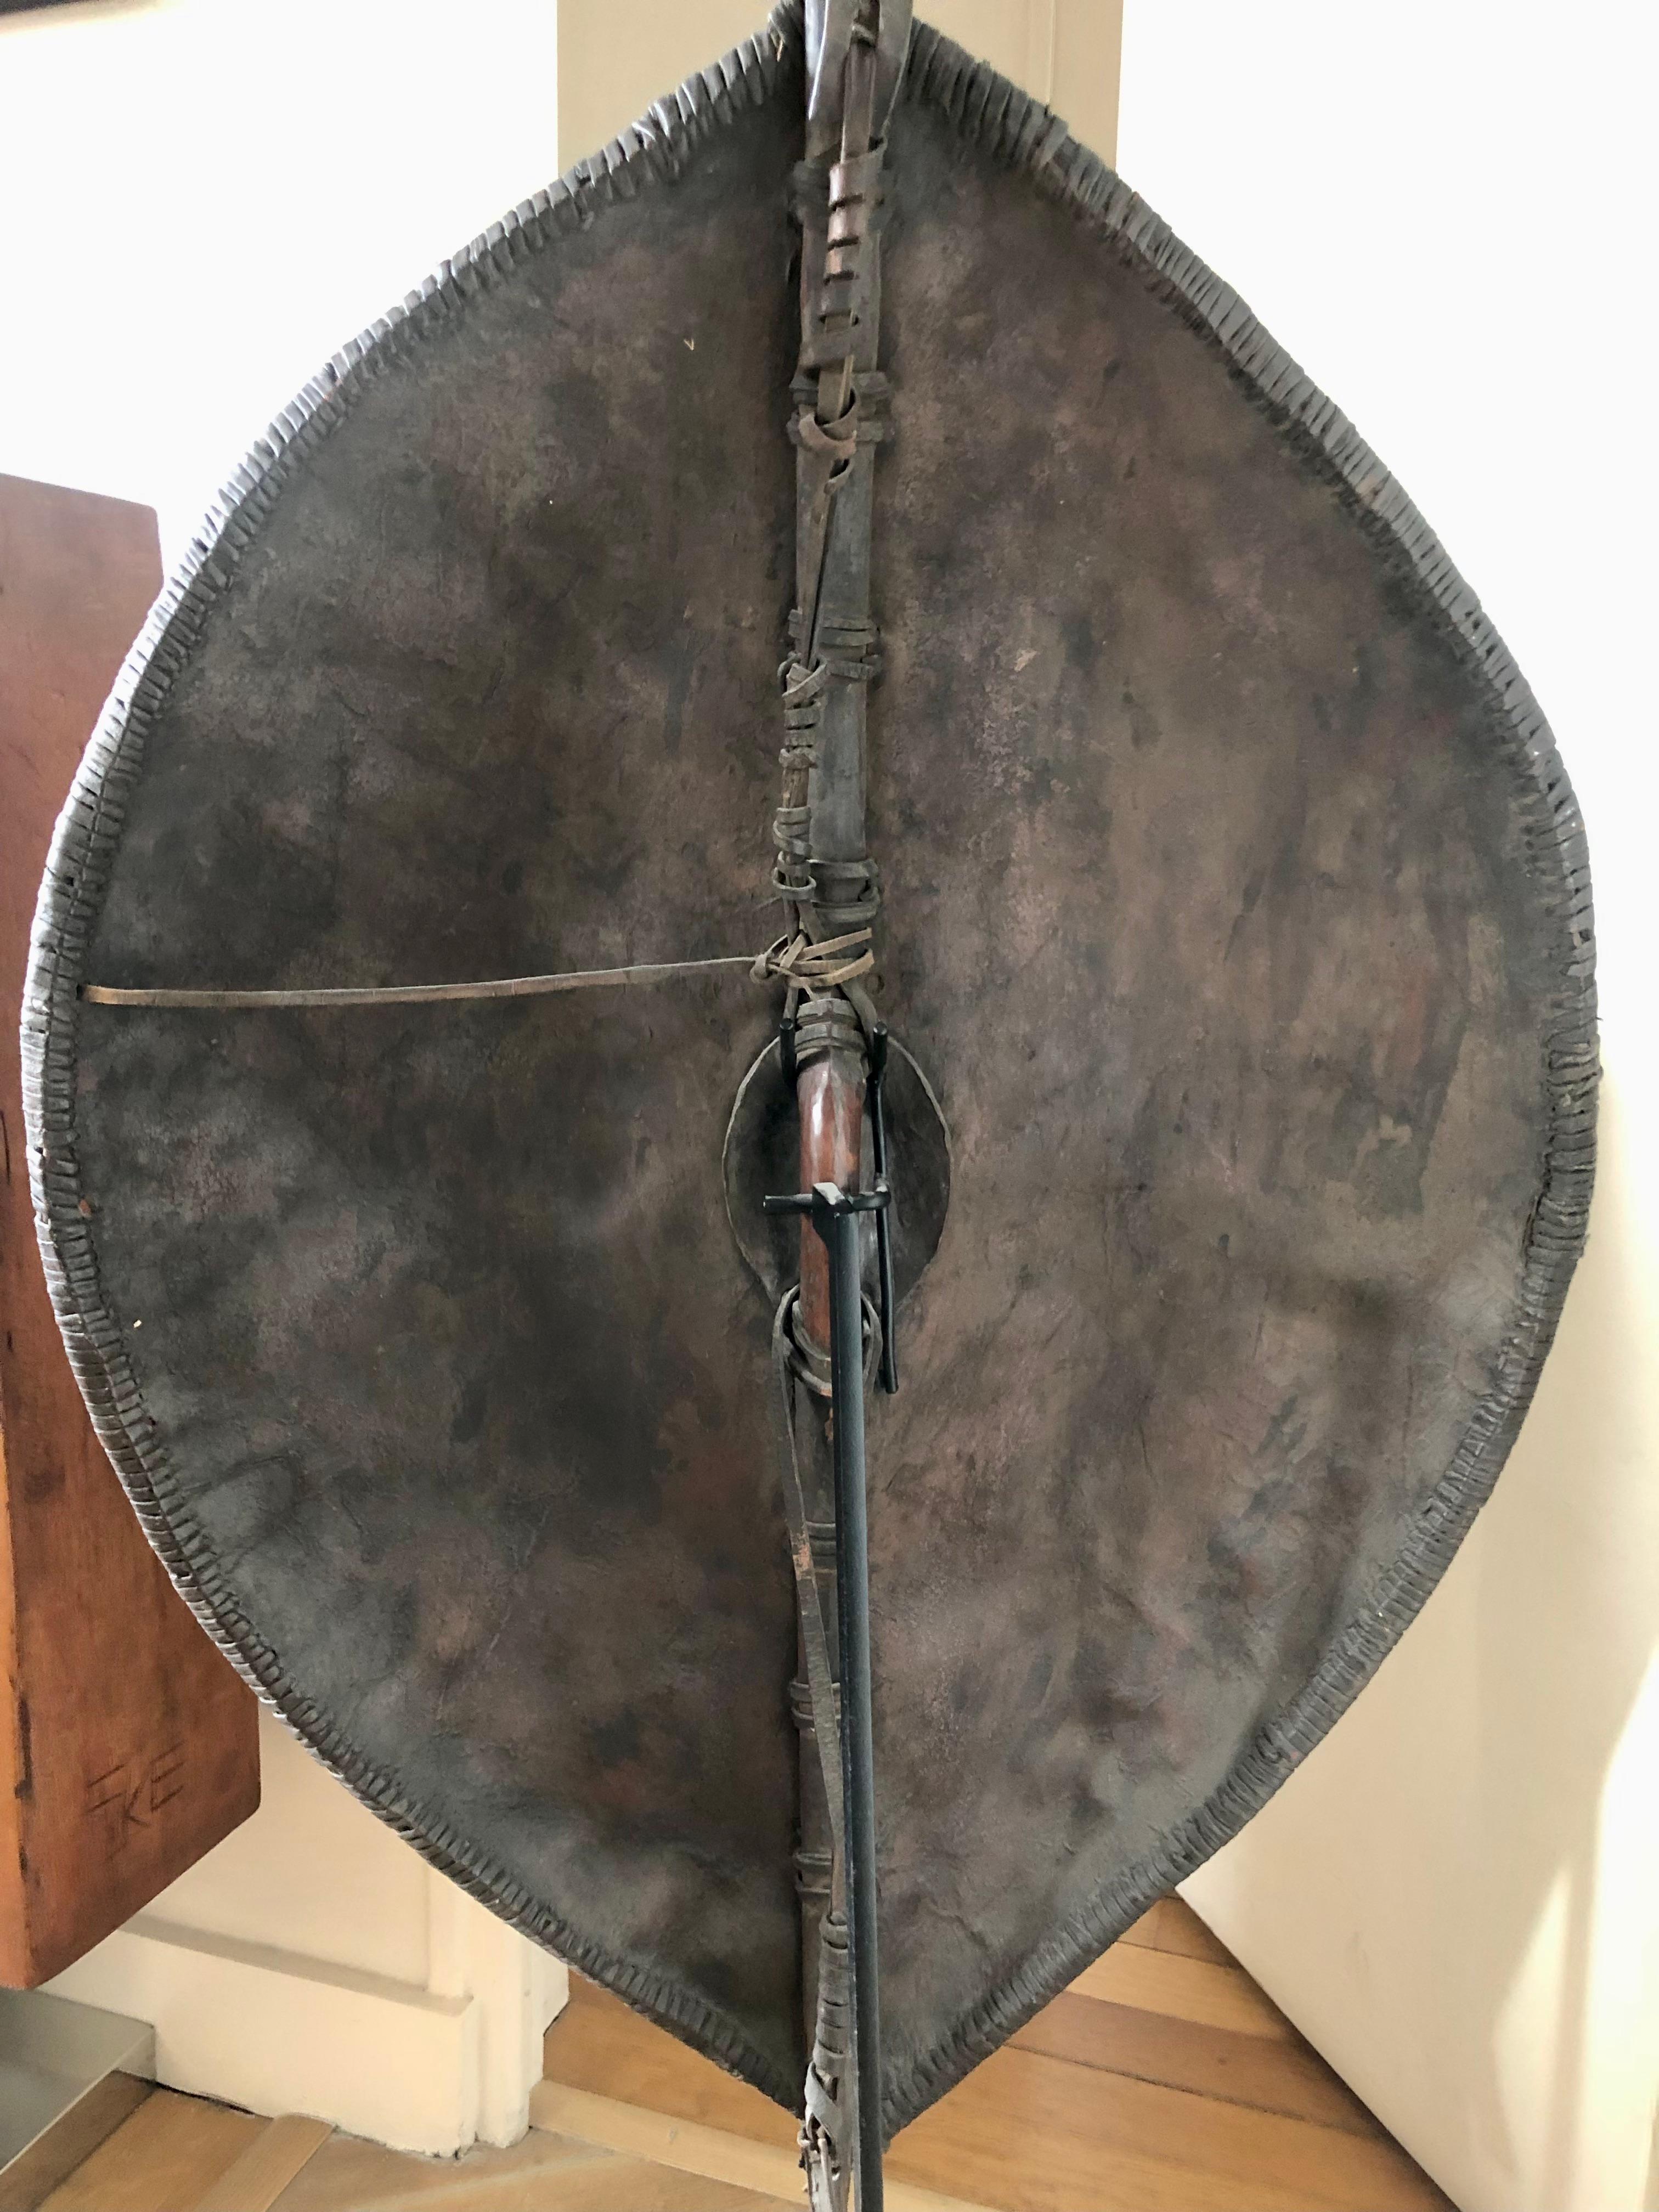 maasai shield